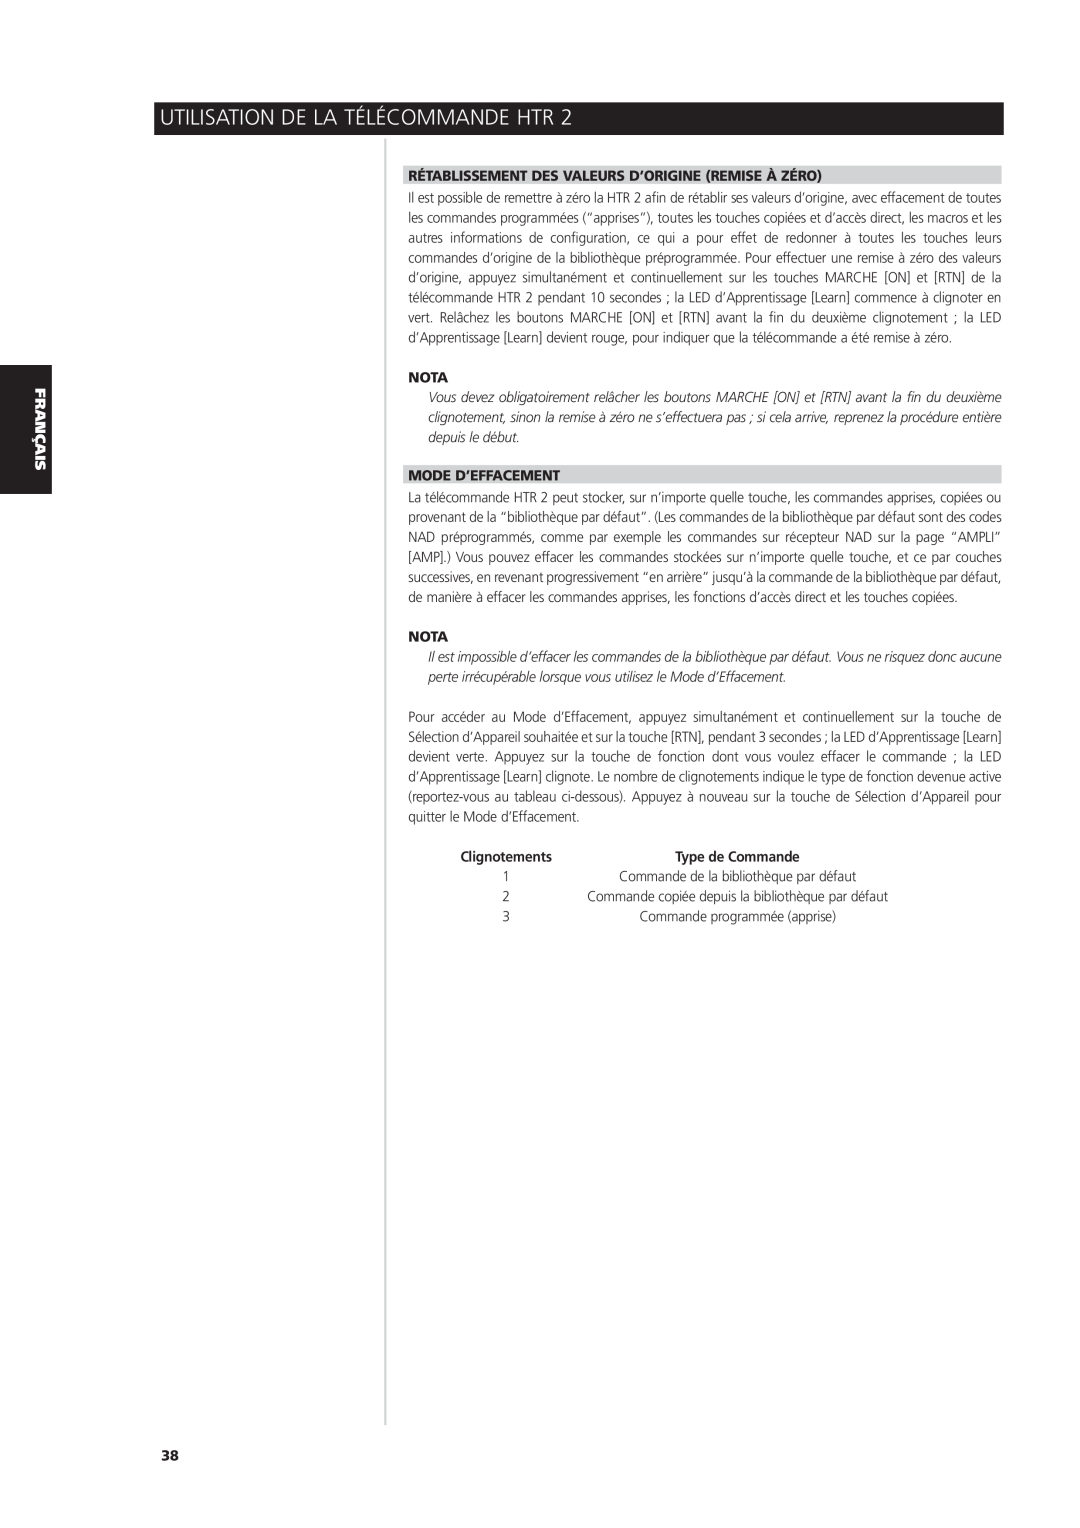 NAD S170iAV owner manual Mode D’Effacement, Clignotements, Utilisation De La Télécommande Htr, Nota 